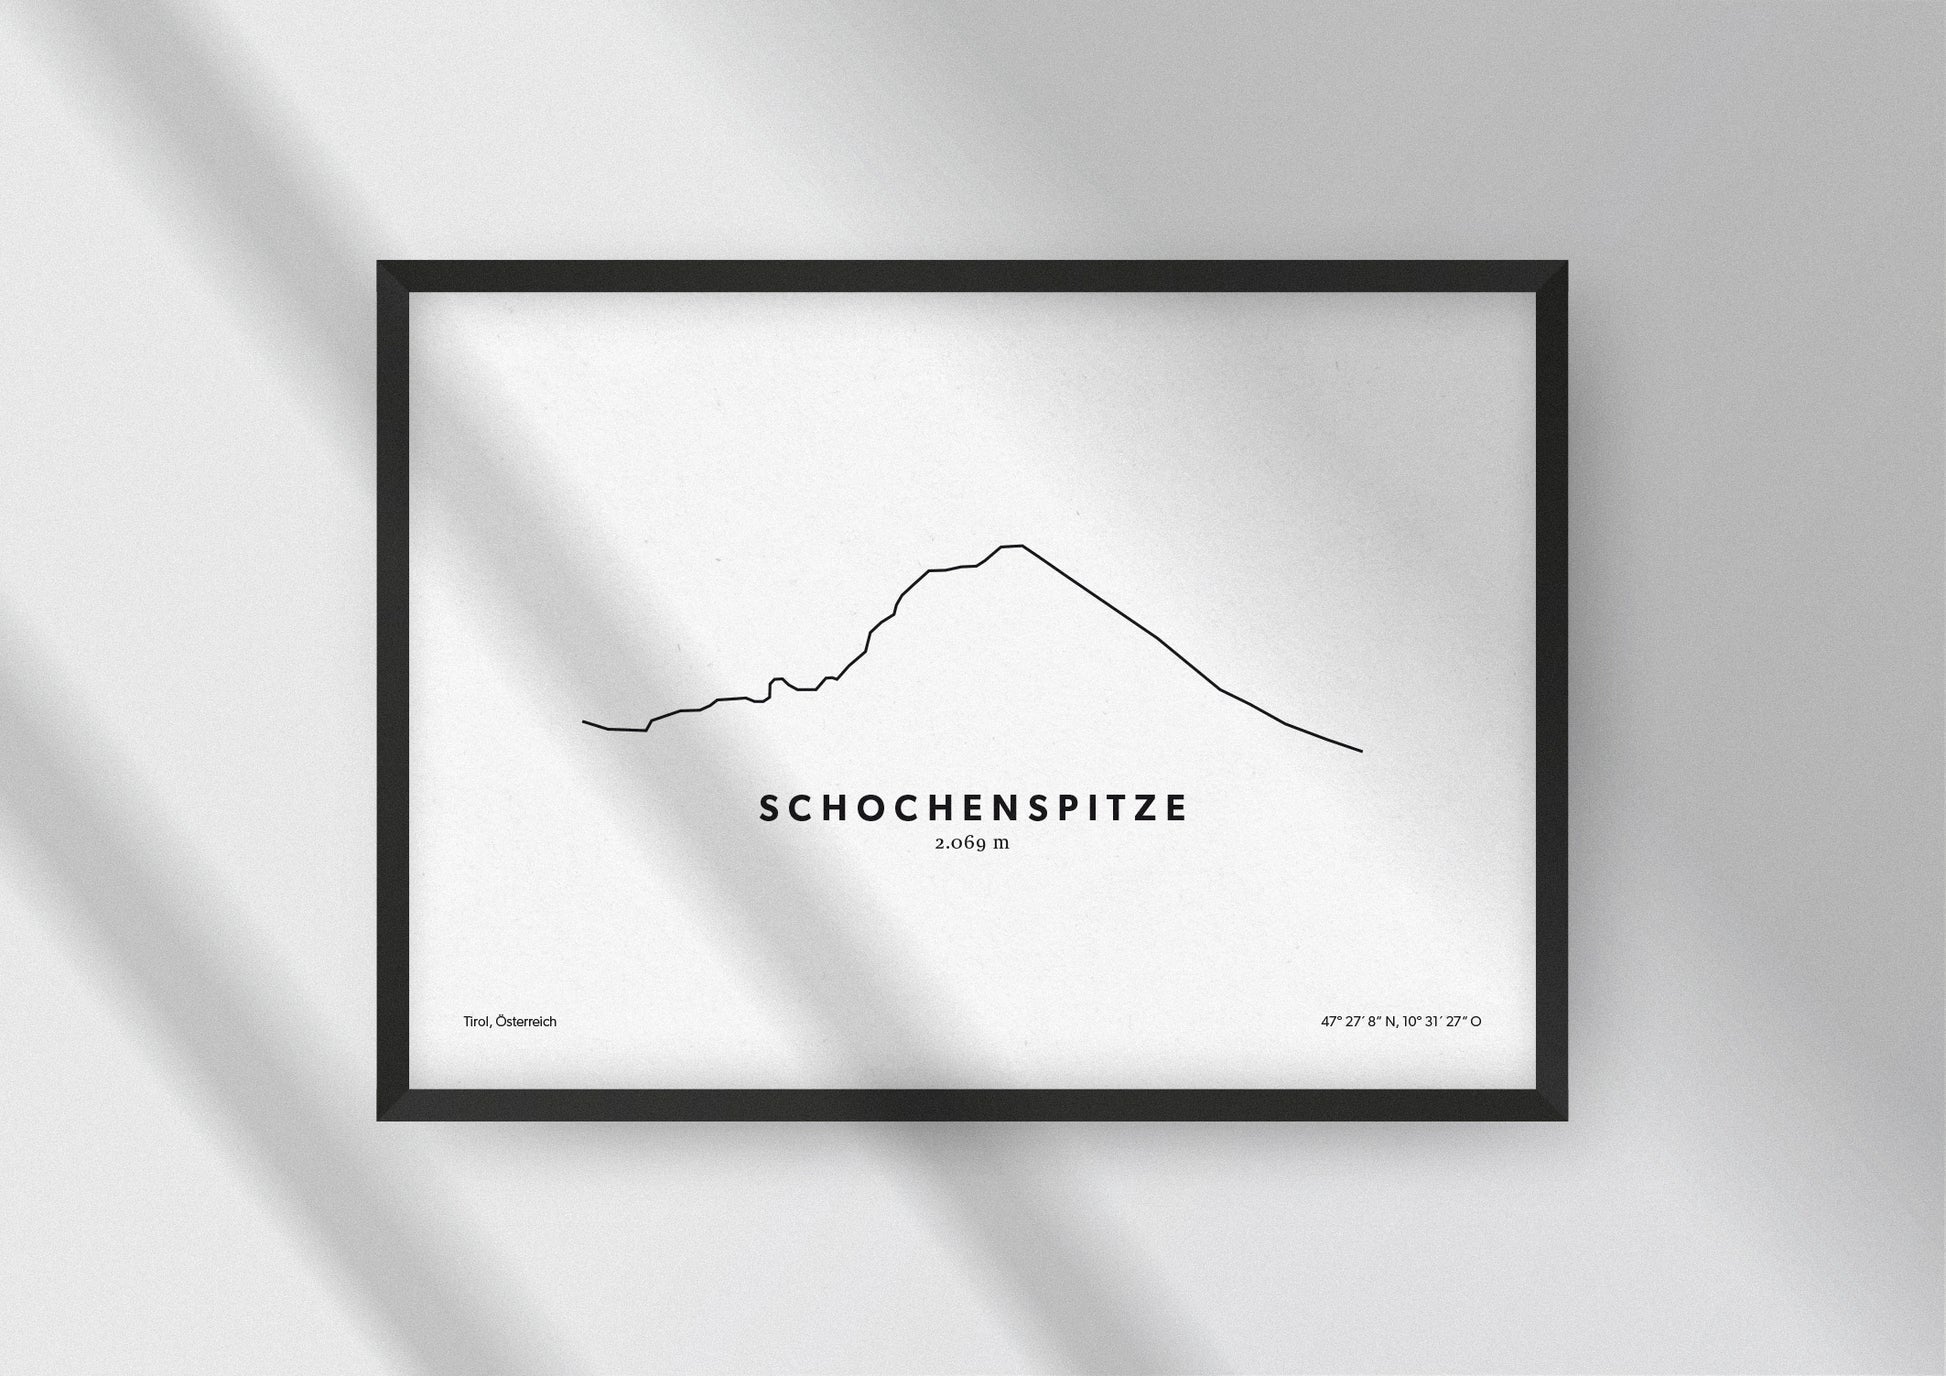 Minimalistische Illustration der Schochenspitze in Tirol, als stilvoller Einrichtungsgegenstand für Zuhause.